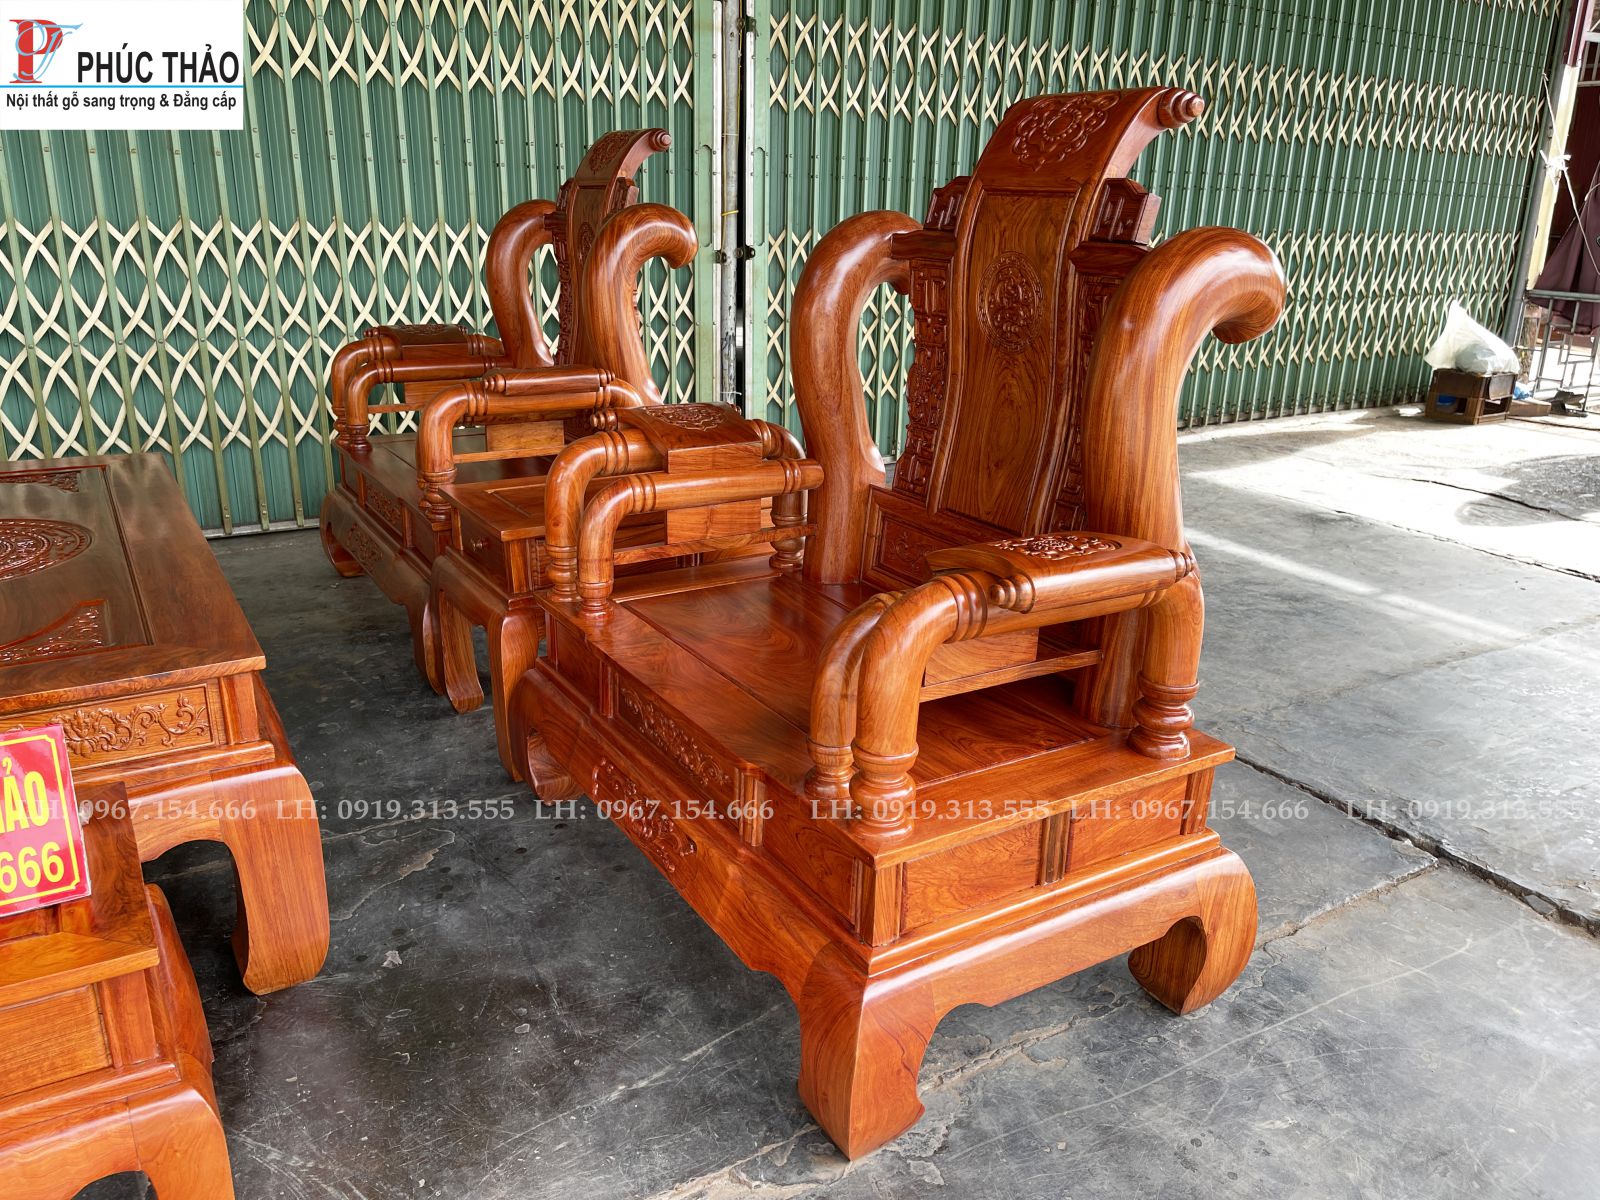 Phucthao.vn cơ sở bán bộ bàn ghế tần tay 12 cột liền